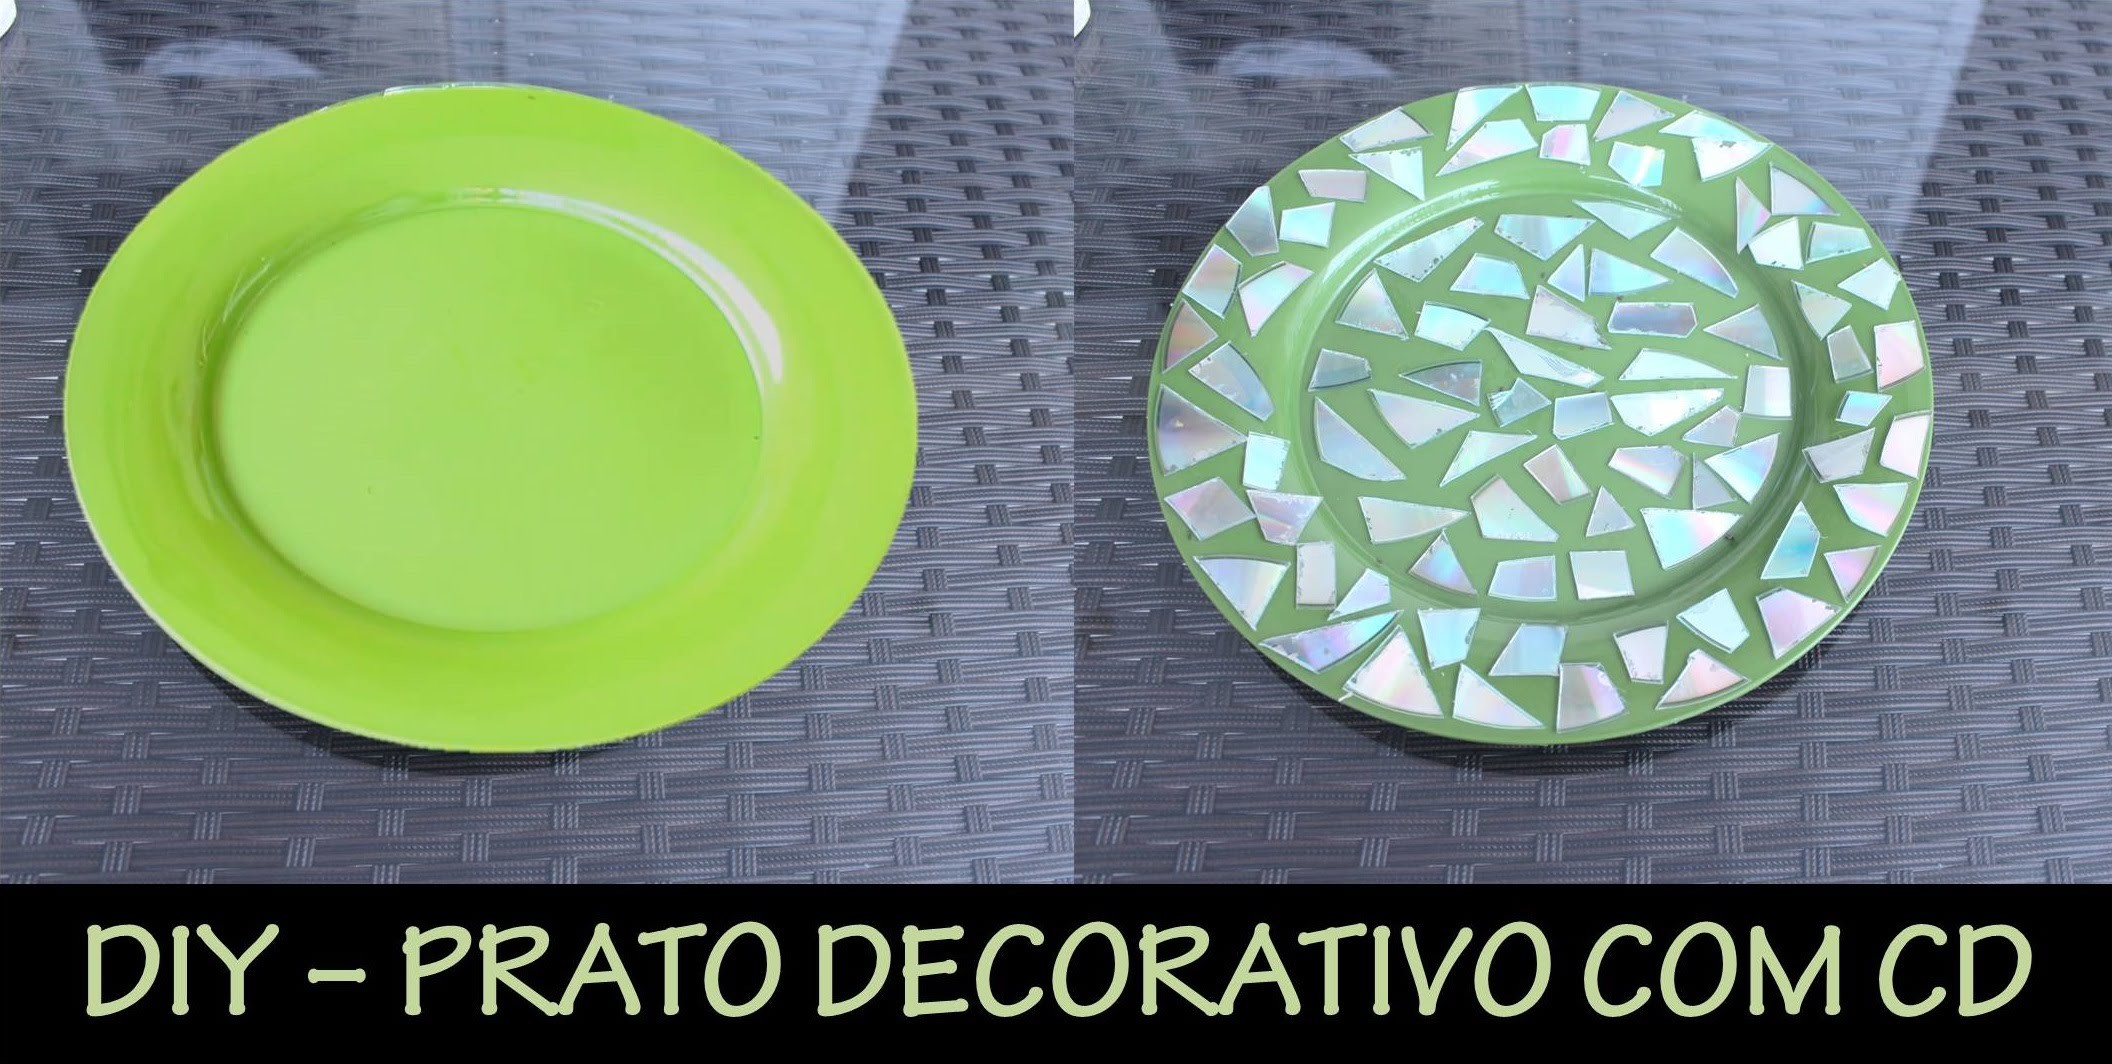 DIY - Prato decorativo com CD